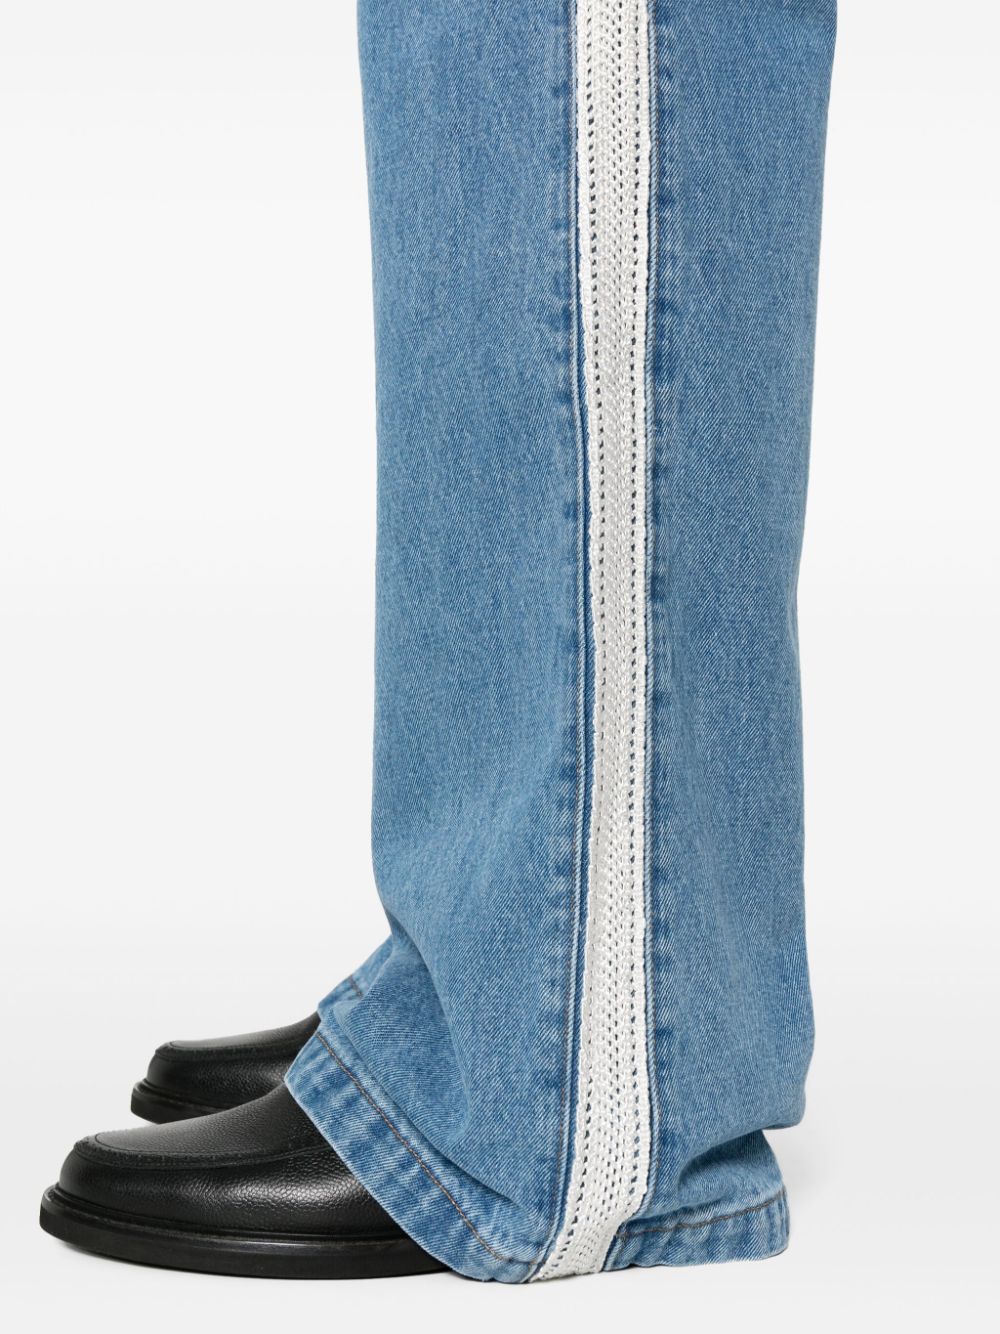 Wales Bonner WALES BONNER- Denim Cotton Jeans